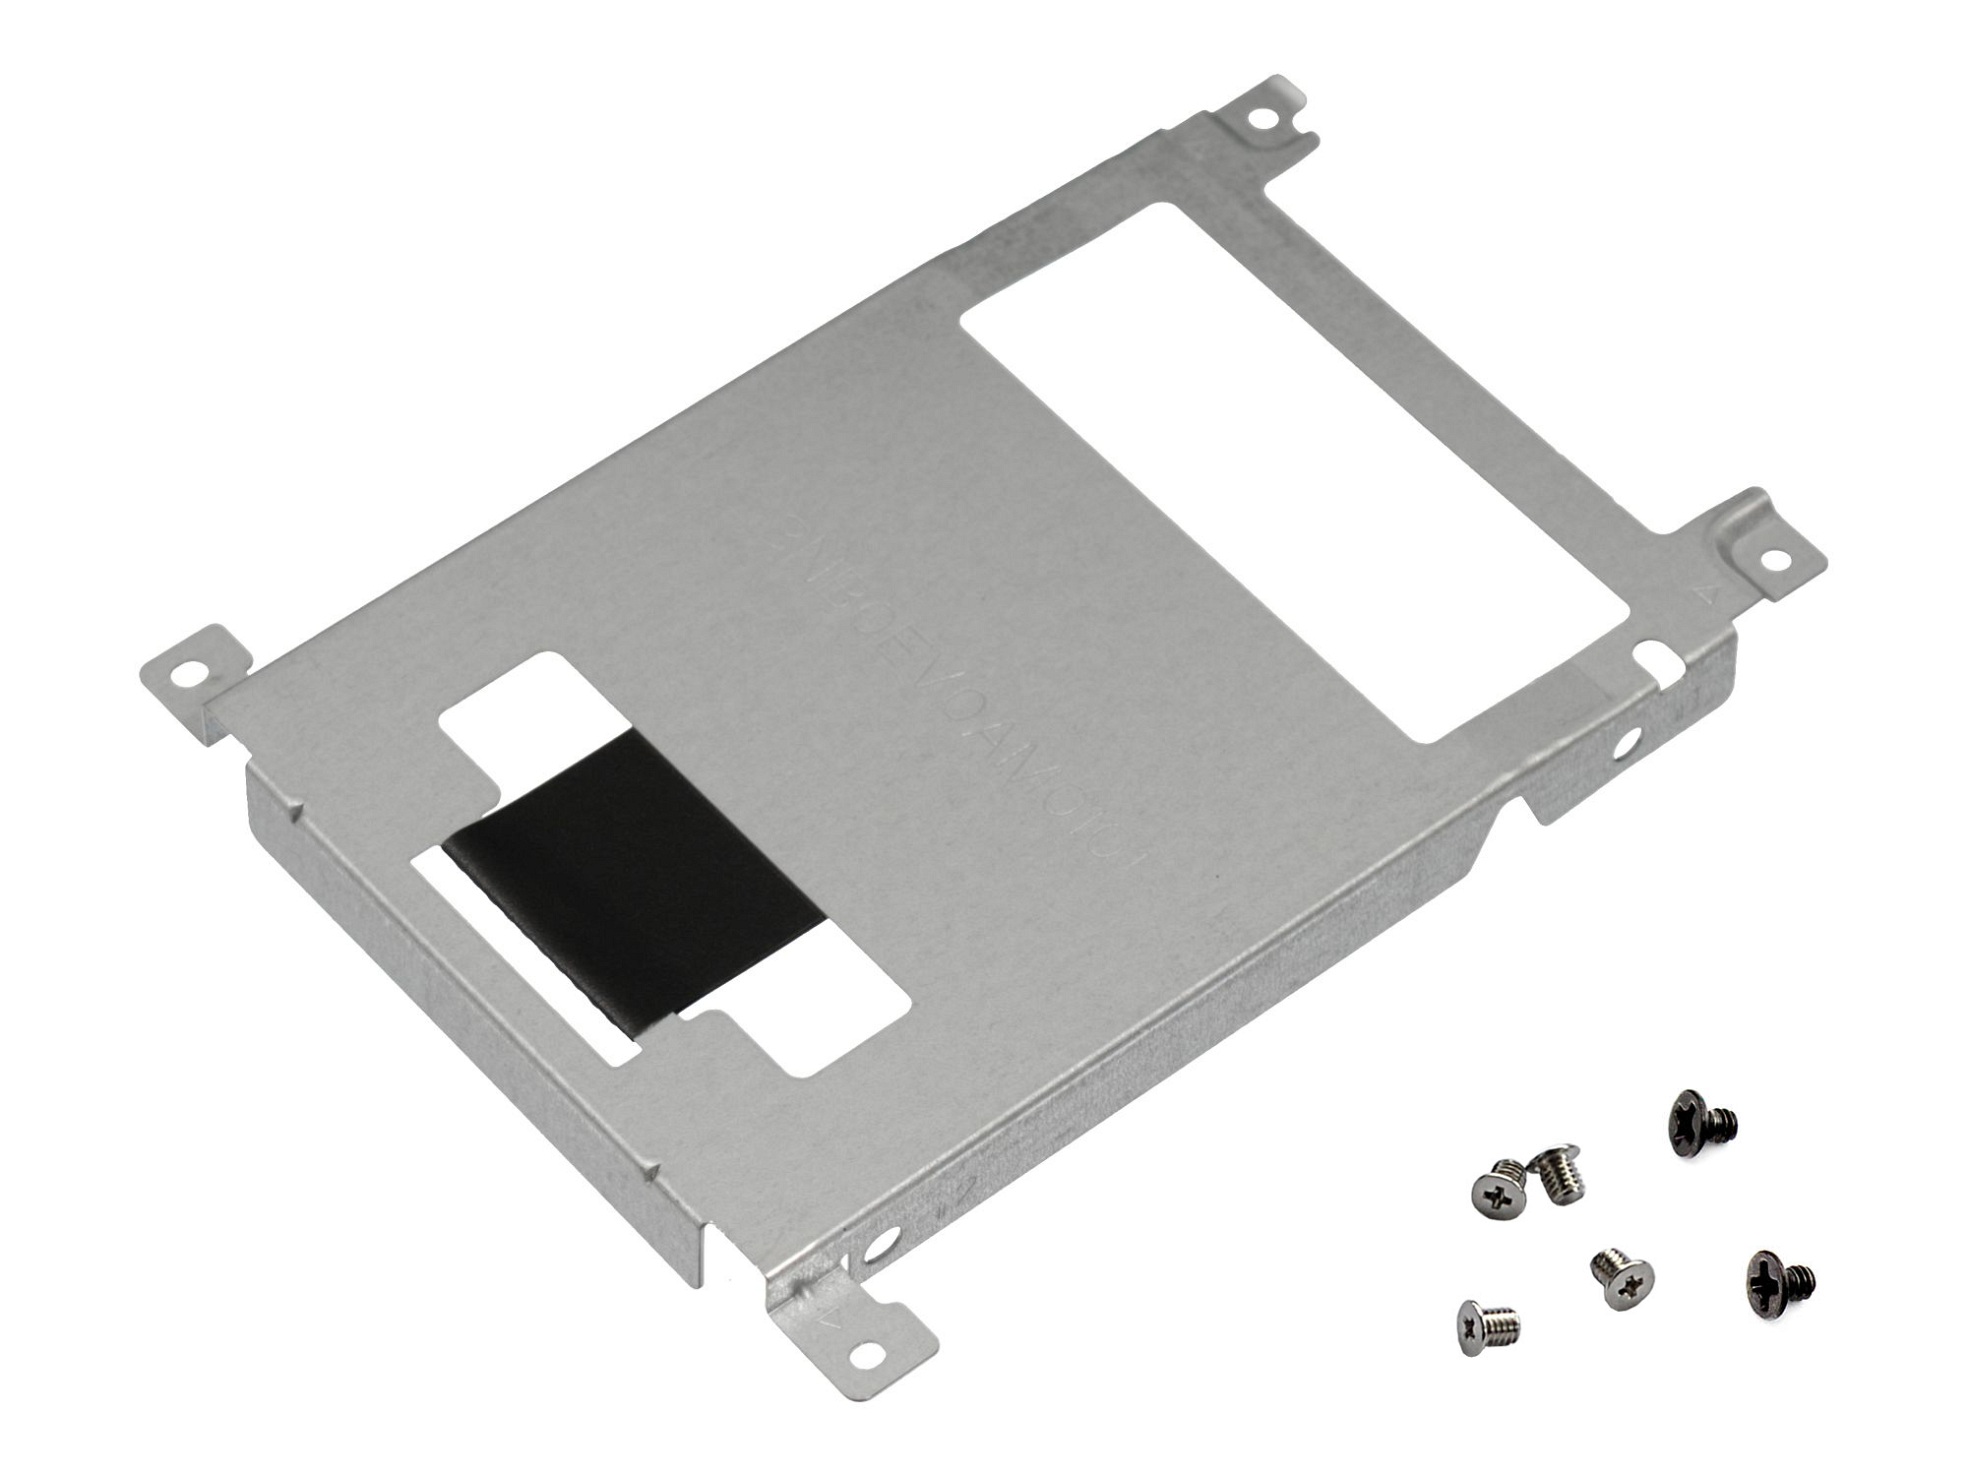 Festplatten-Einbaurahmen für den 1. Festplatten Schacht inkl. Schrauben Original für Asus VivoBook 17 X705UV